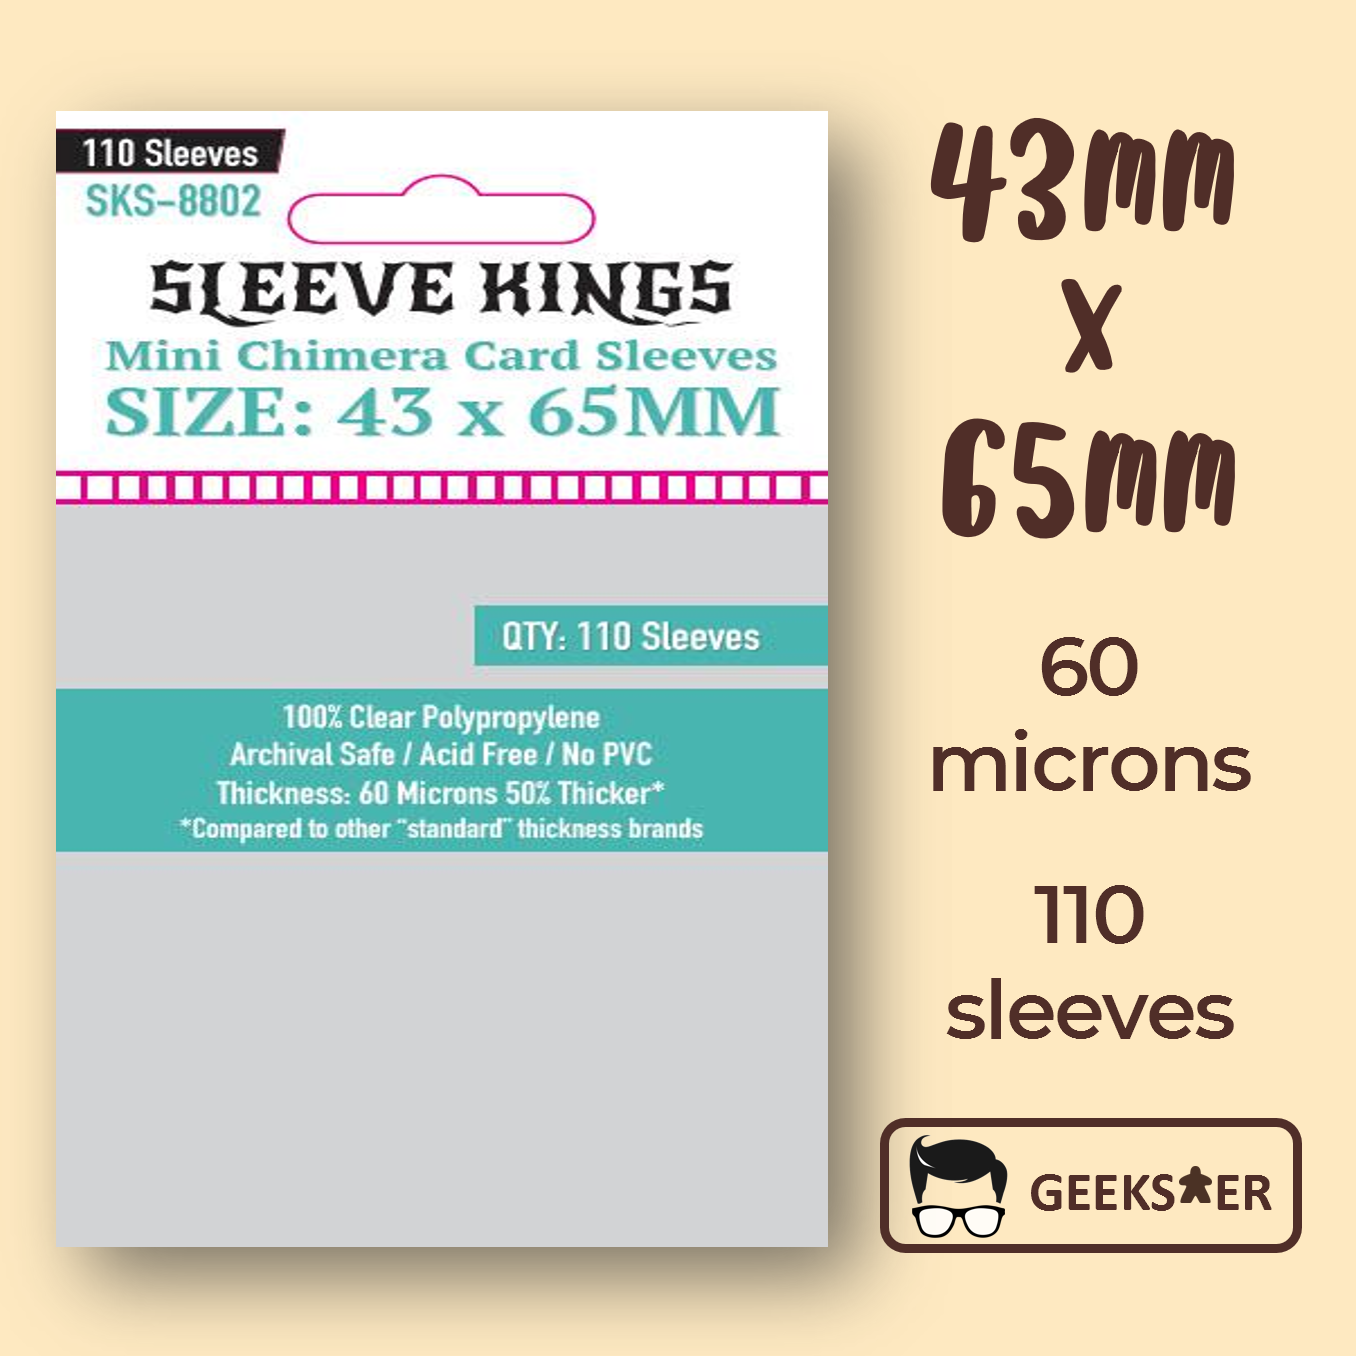 [43 X 65mm] 8802 Sleeve Kings Mini Chimera